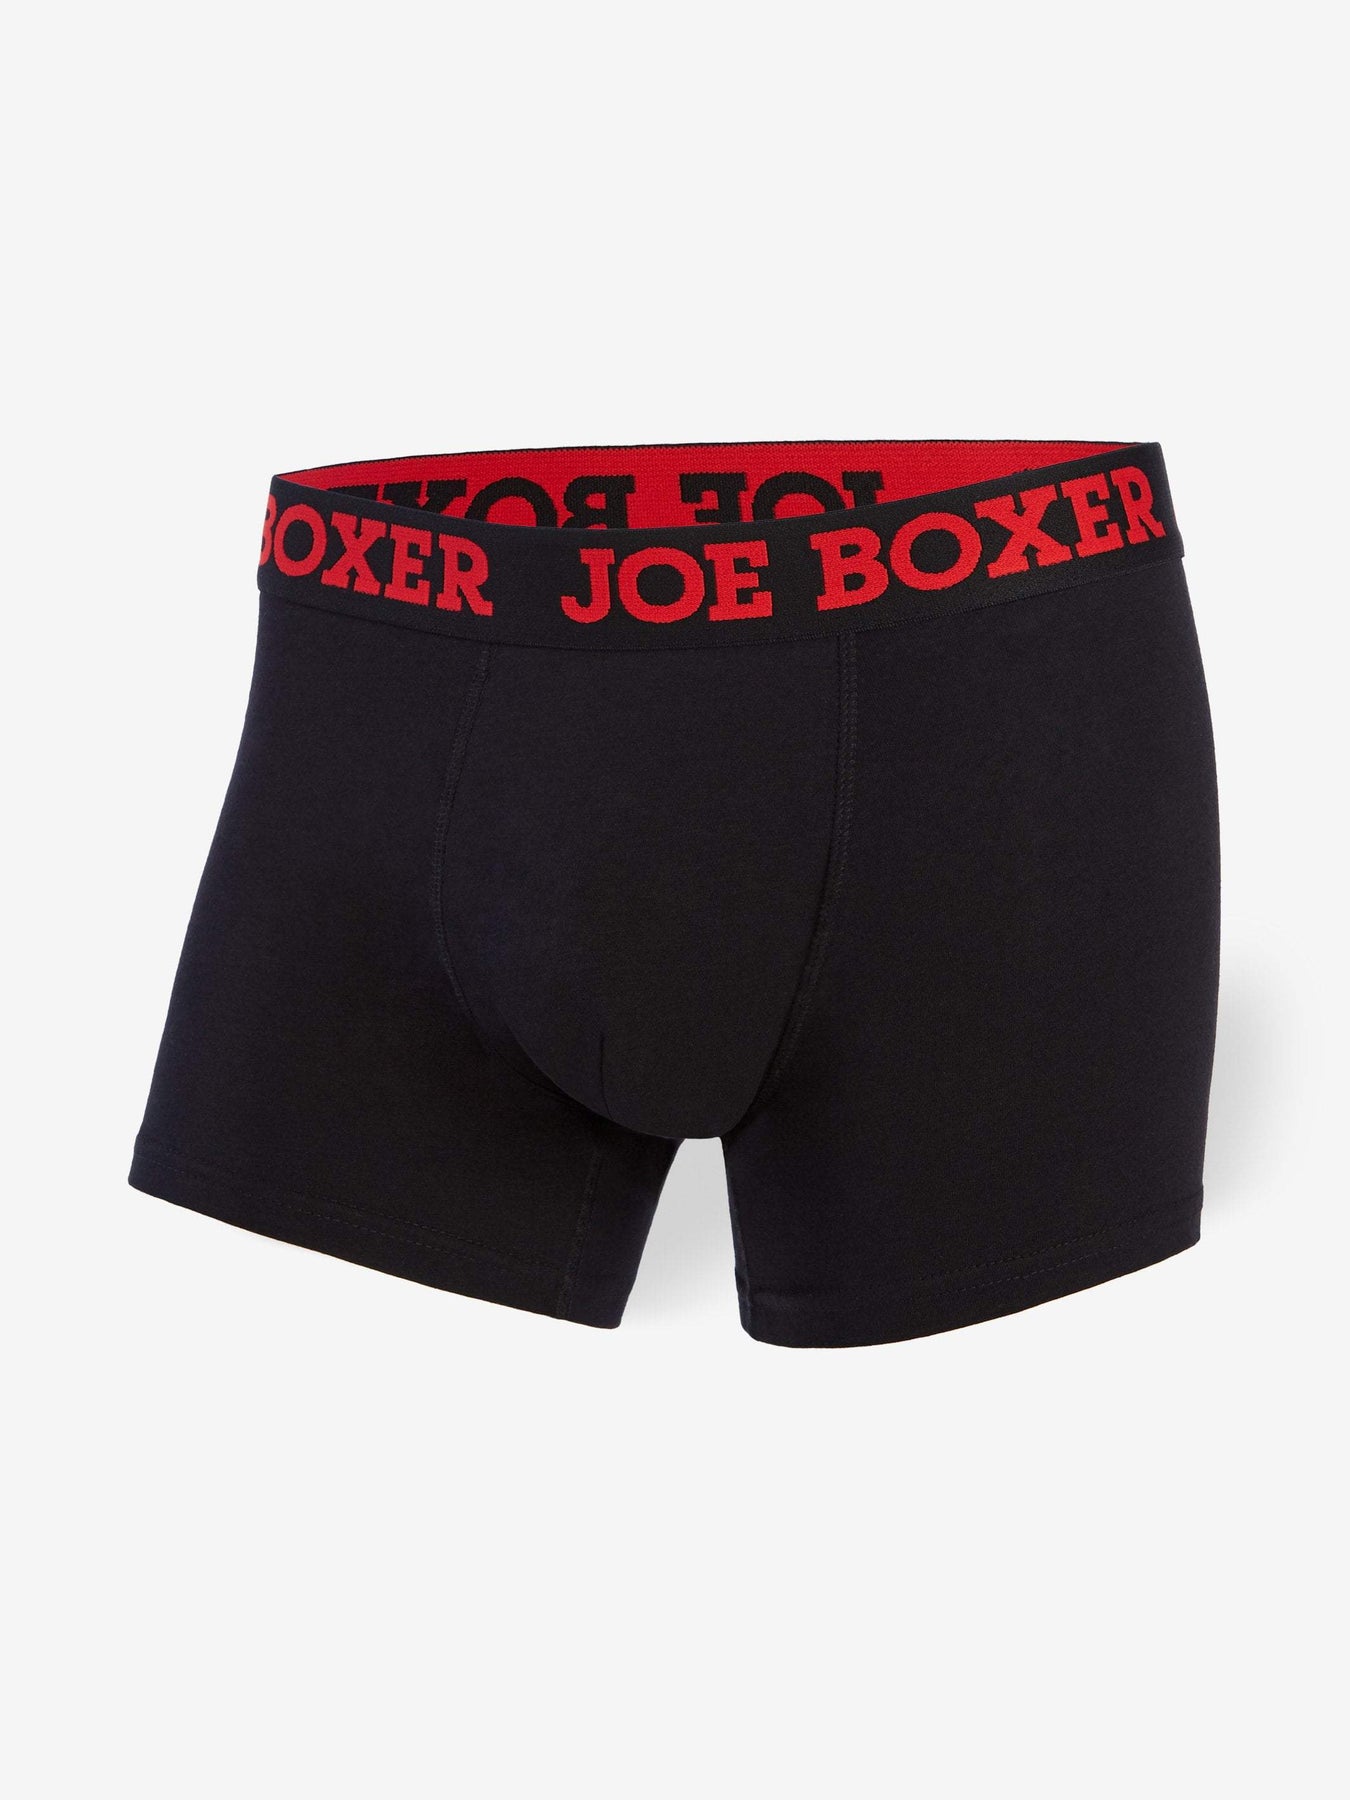 JM SKINZ Pouch Boxer 88137-001, Mens Trunk Boxer Briefs